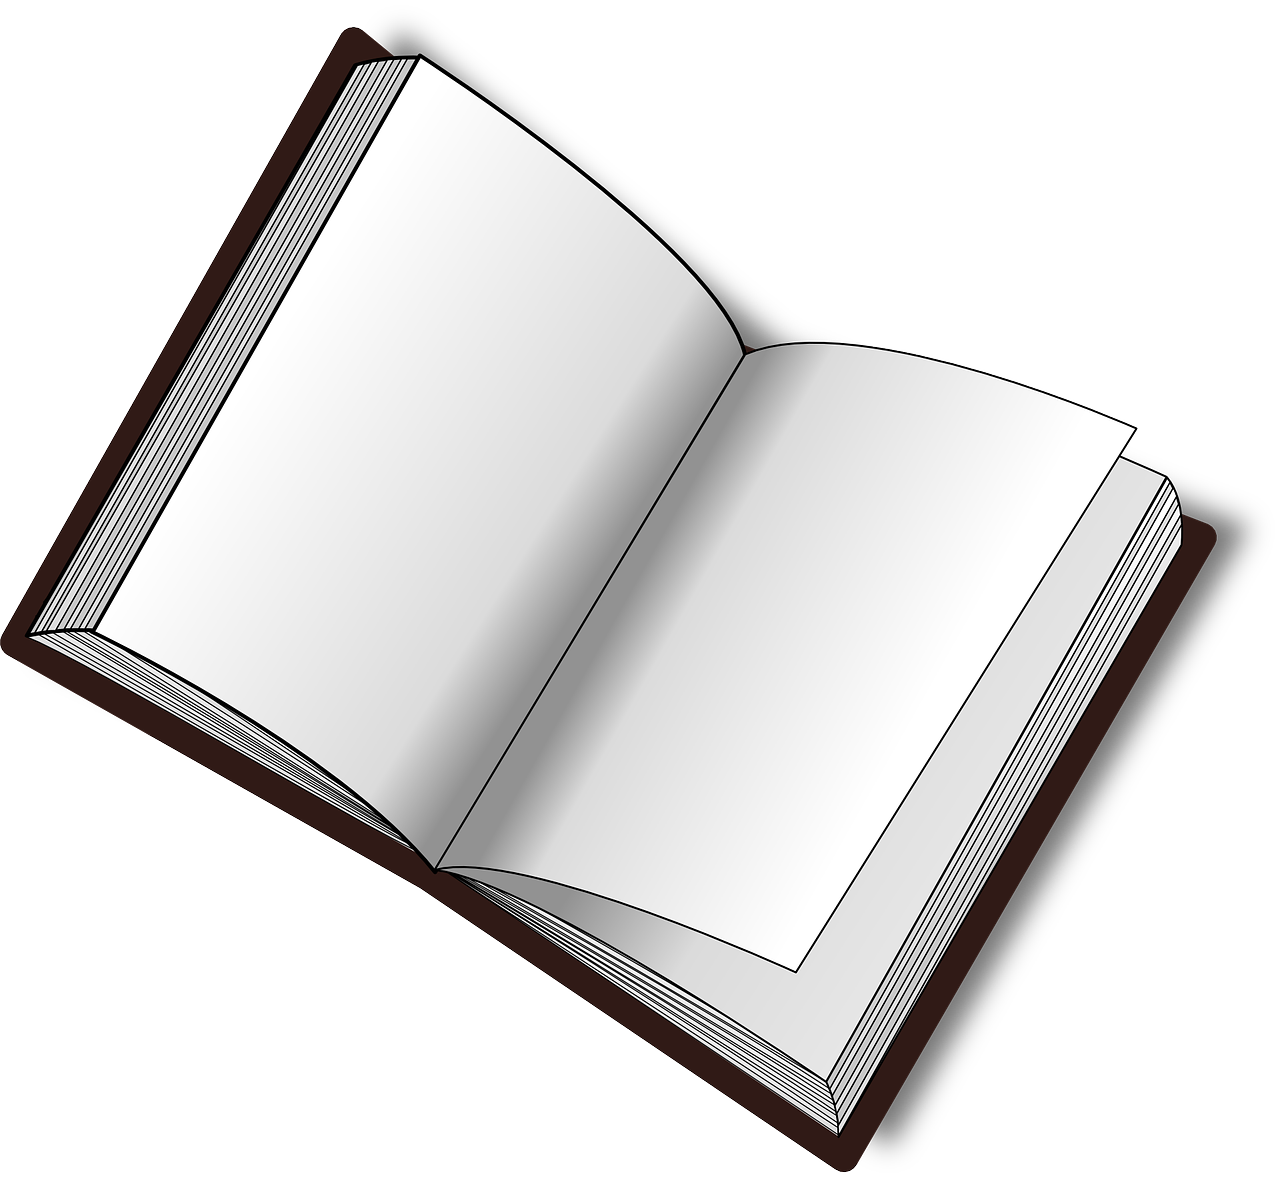 book dictionary encyclopedia free photo